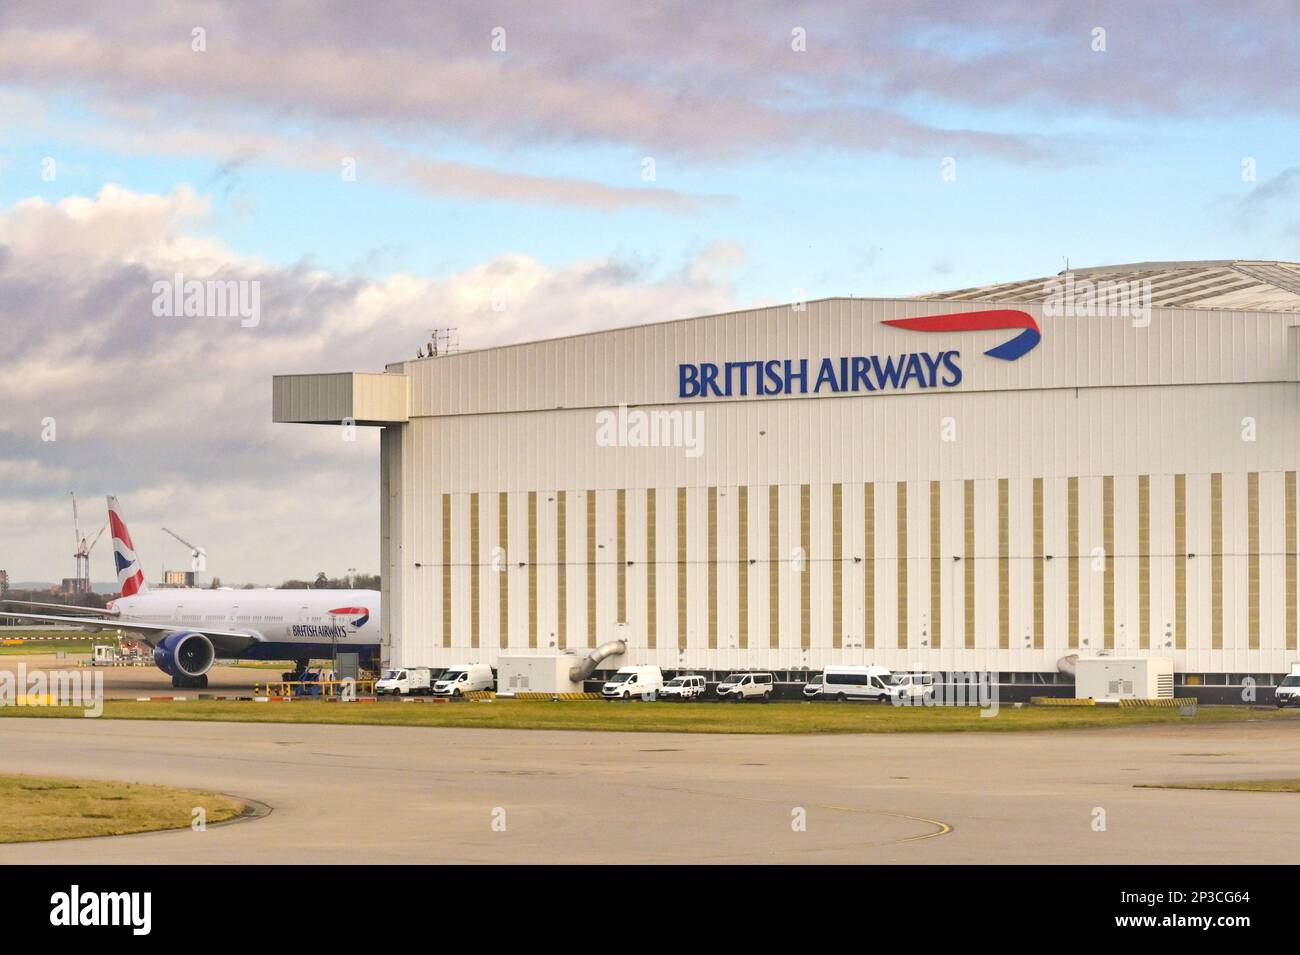 London, England, UK - January 2023: British Airways engineering maintenance hangar at Heathrow airport Stock Photo